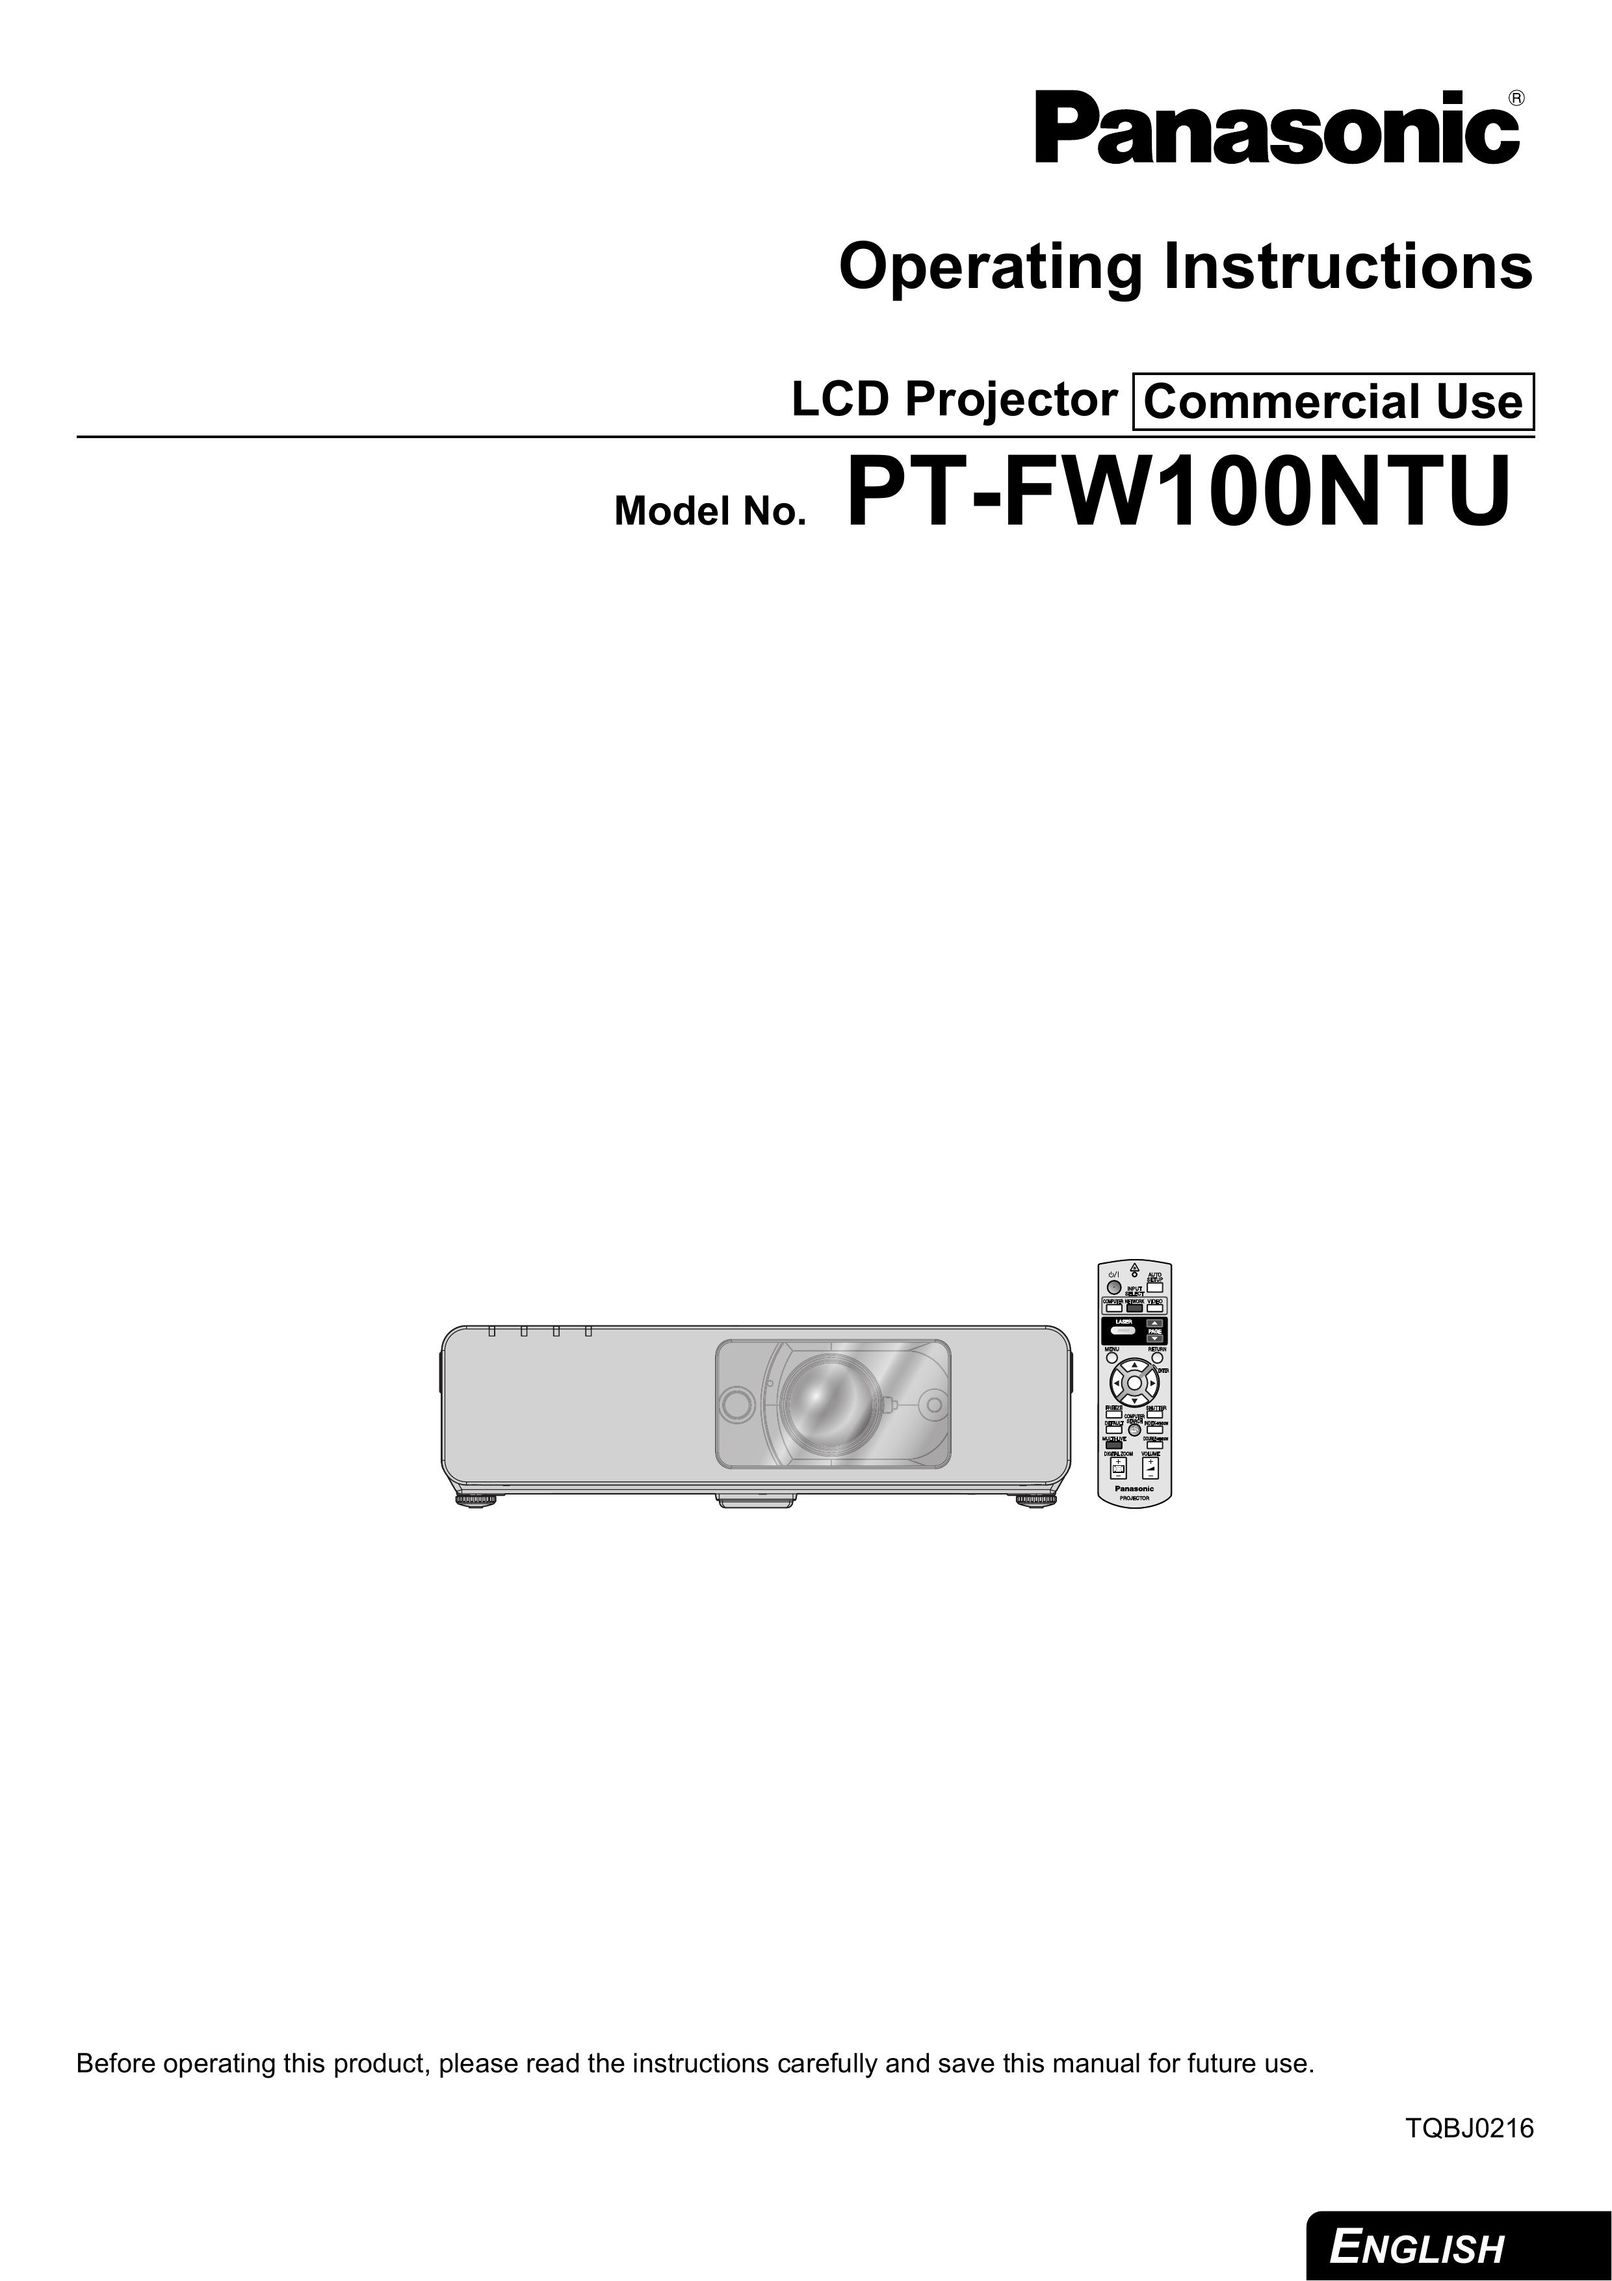 Panasonic FW100NTU Projector User Manual